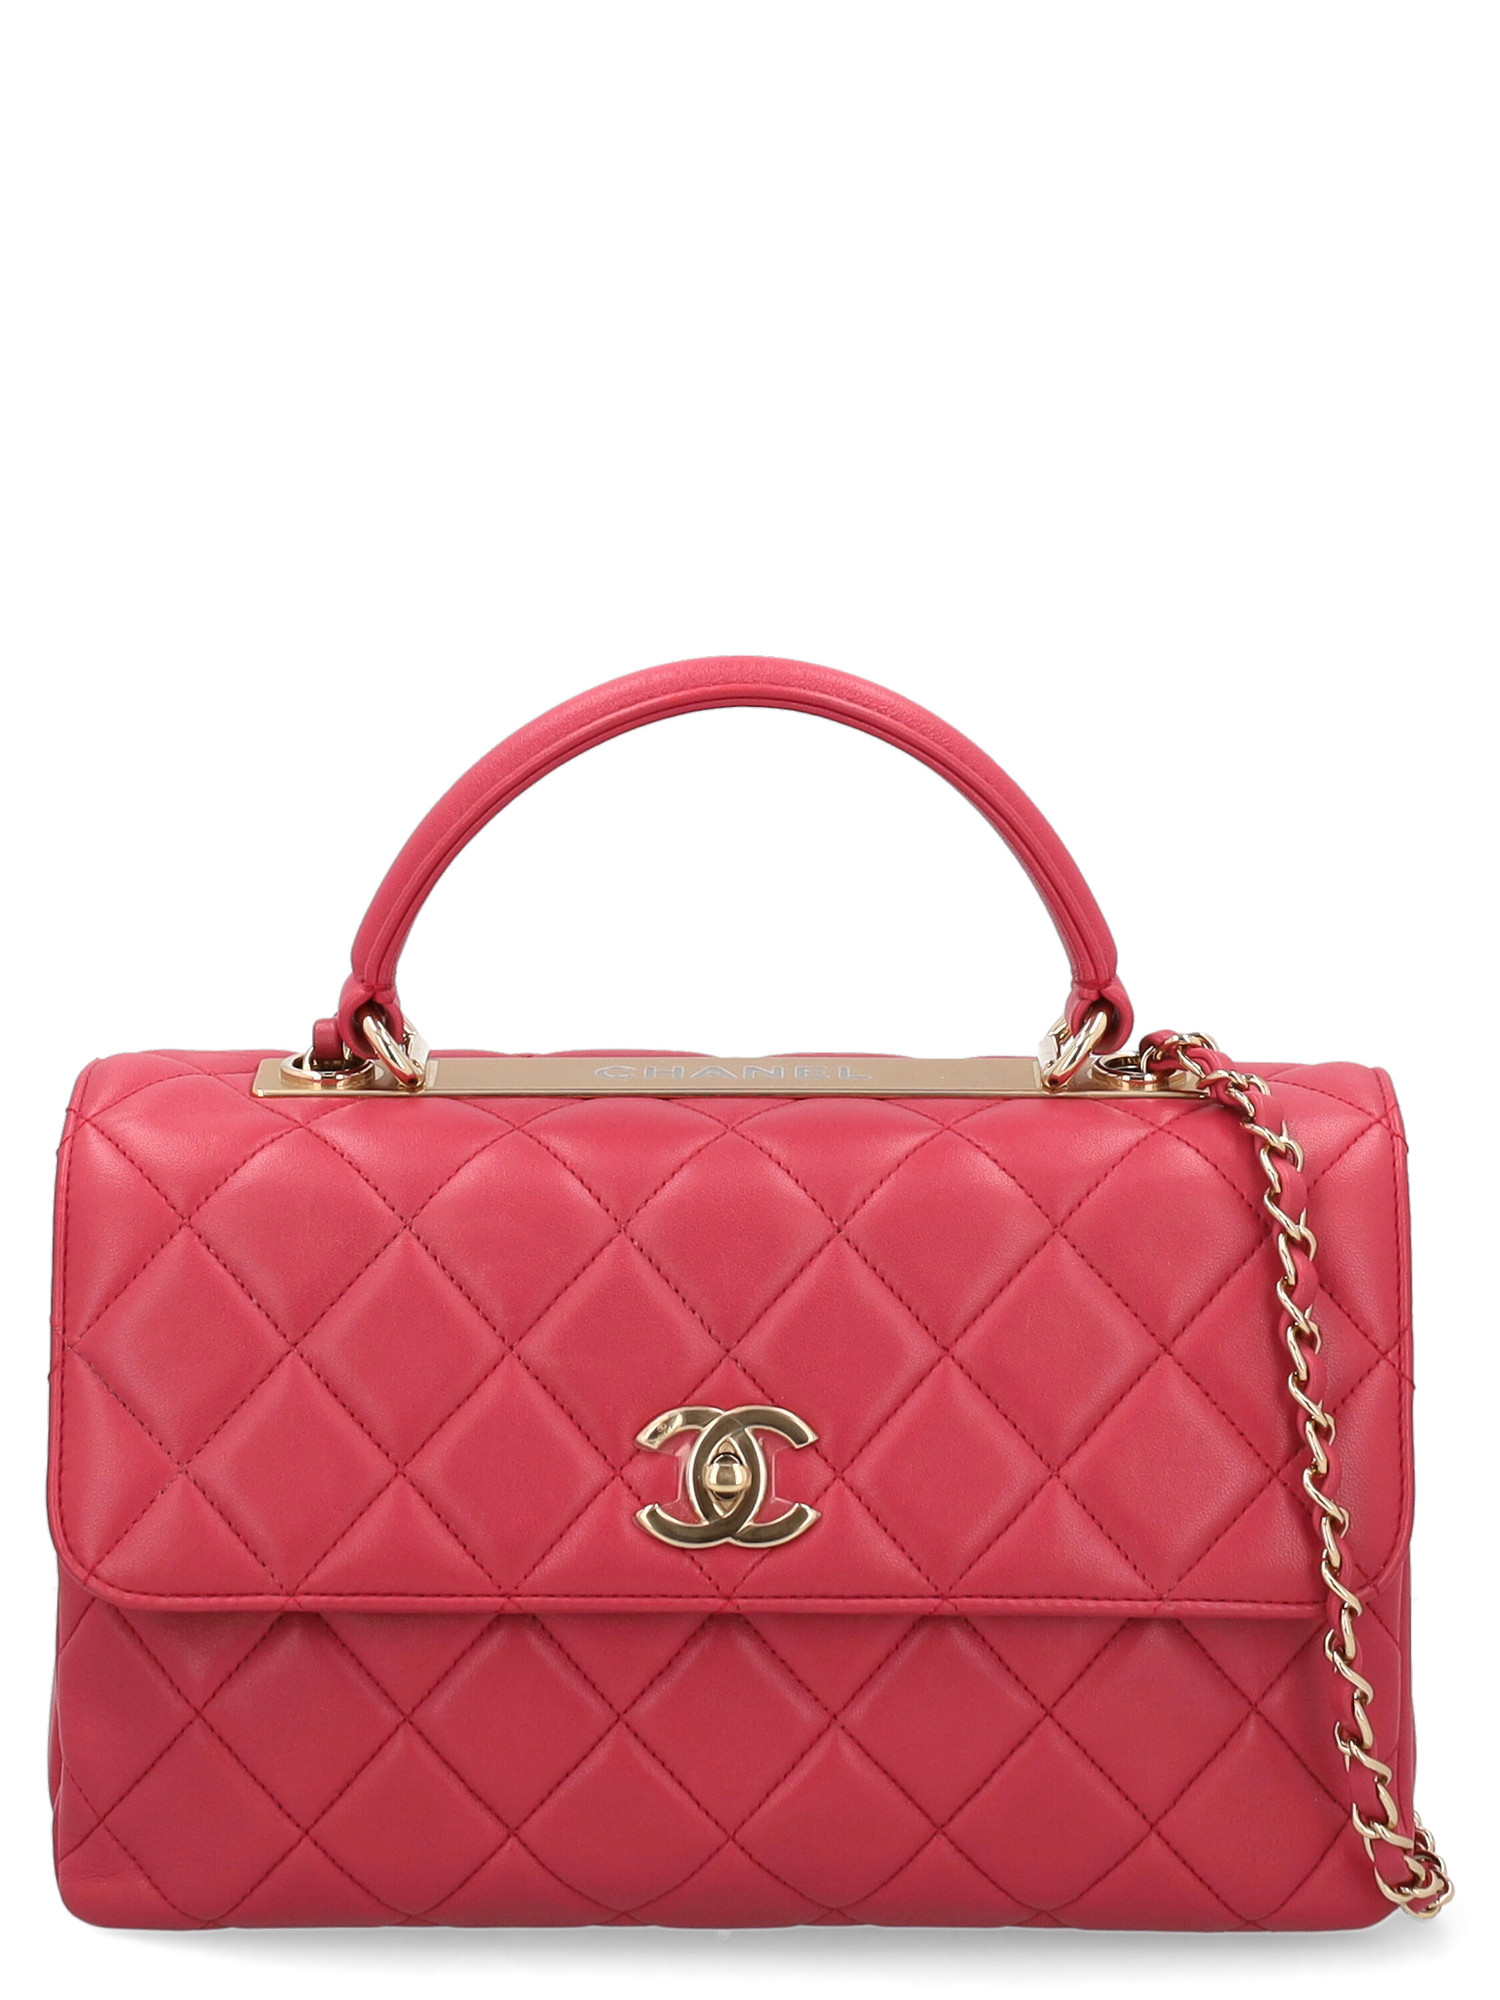 Sacs À Main Pour Femme - Chanel - En Leather Pink - Taille:  -